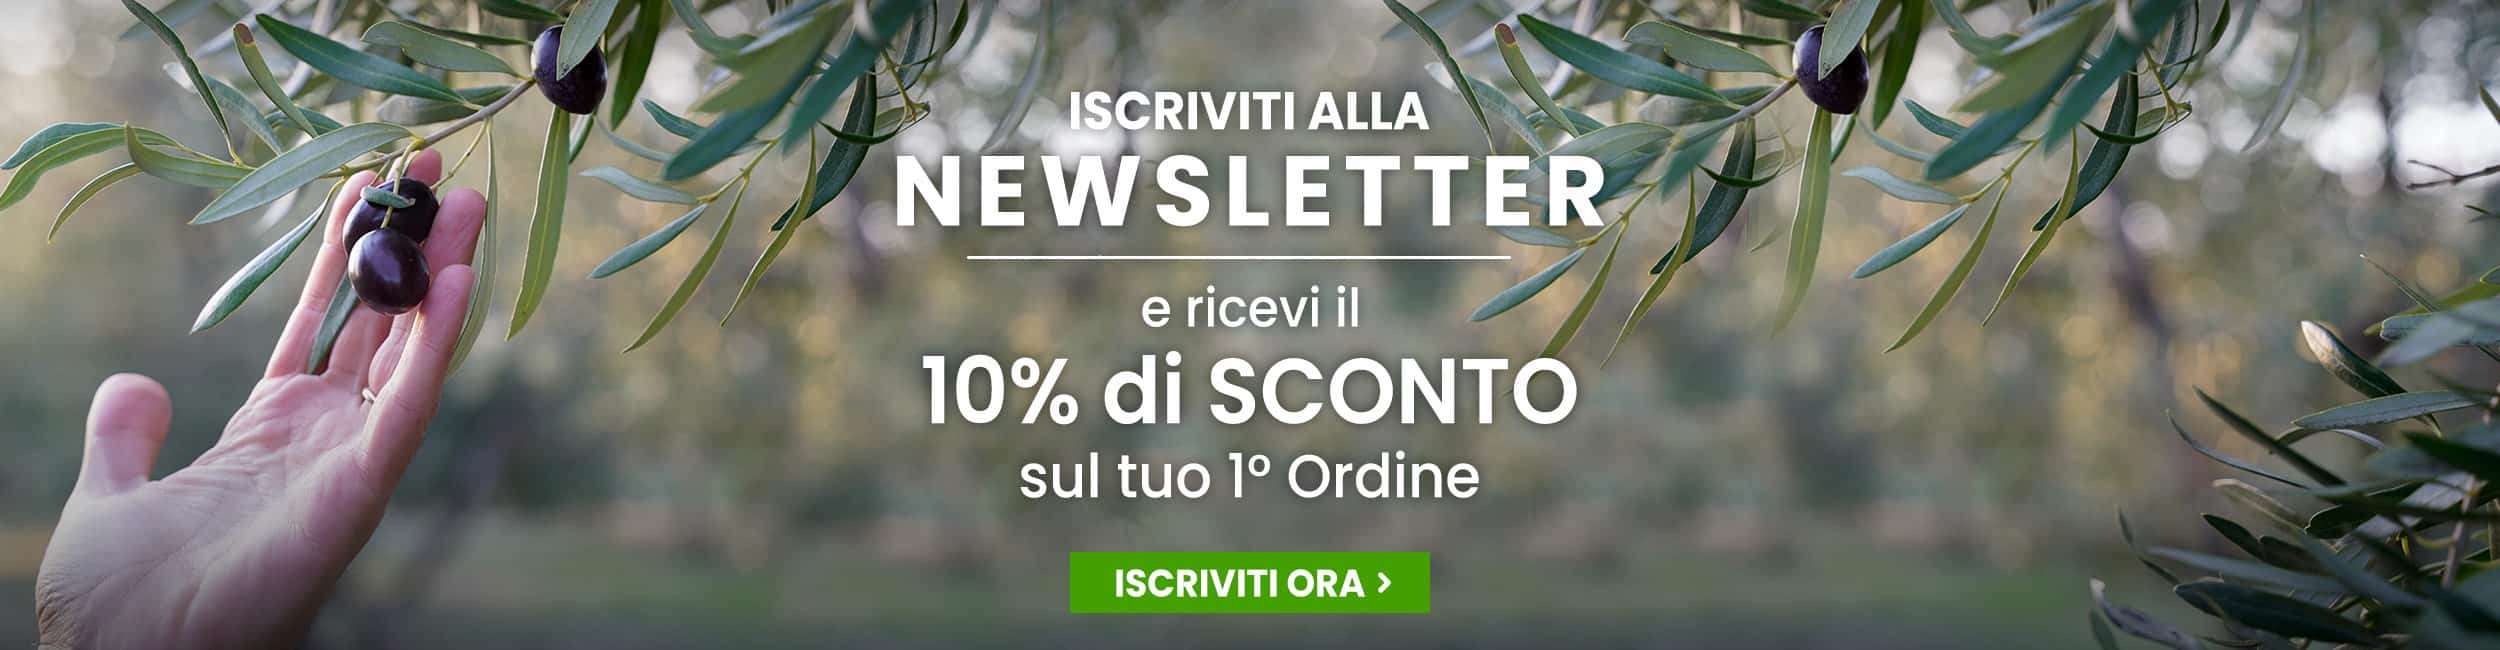 Slide Sconto 10% Newsletter